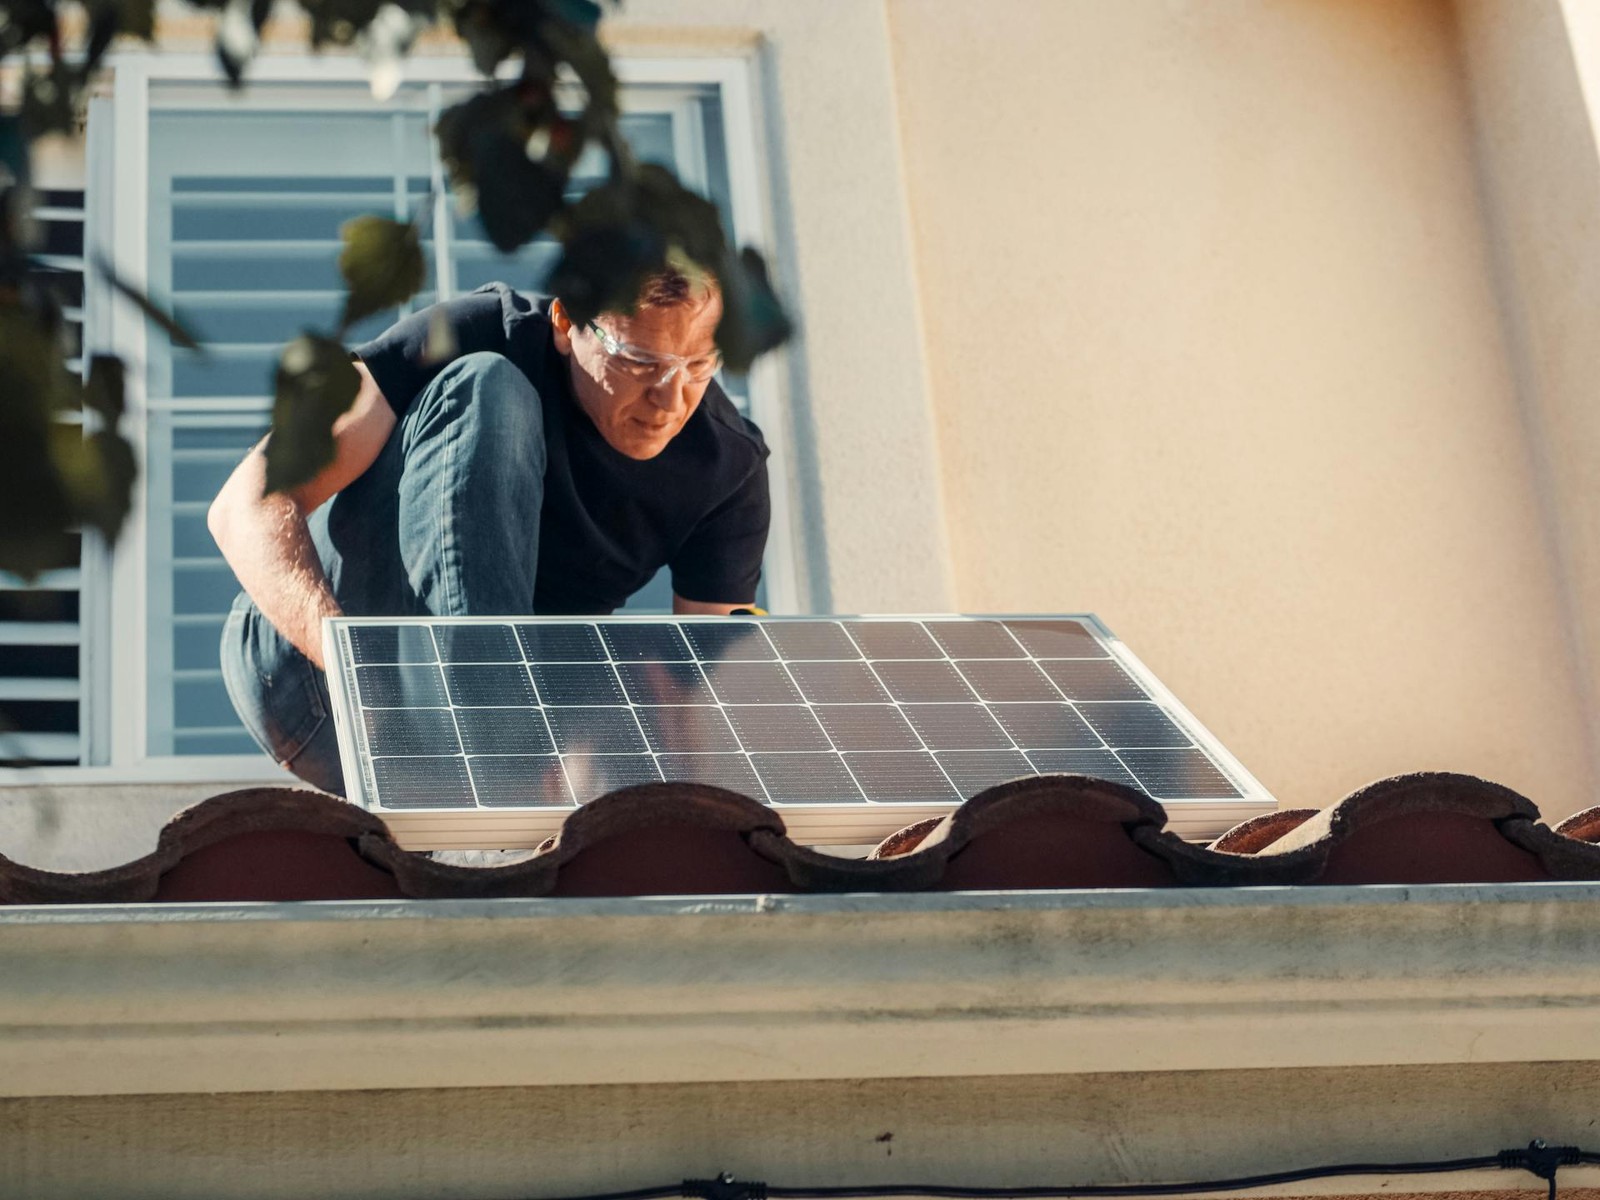 53 proc. domów jednorodzinnych może przejść w całości na zasilanie energią słoneczną
